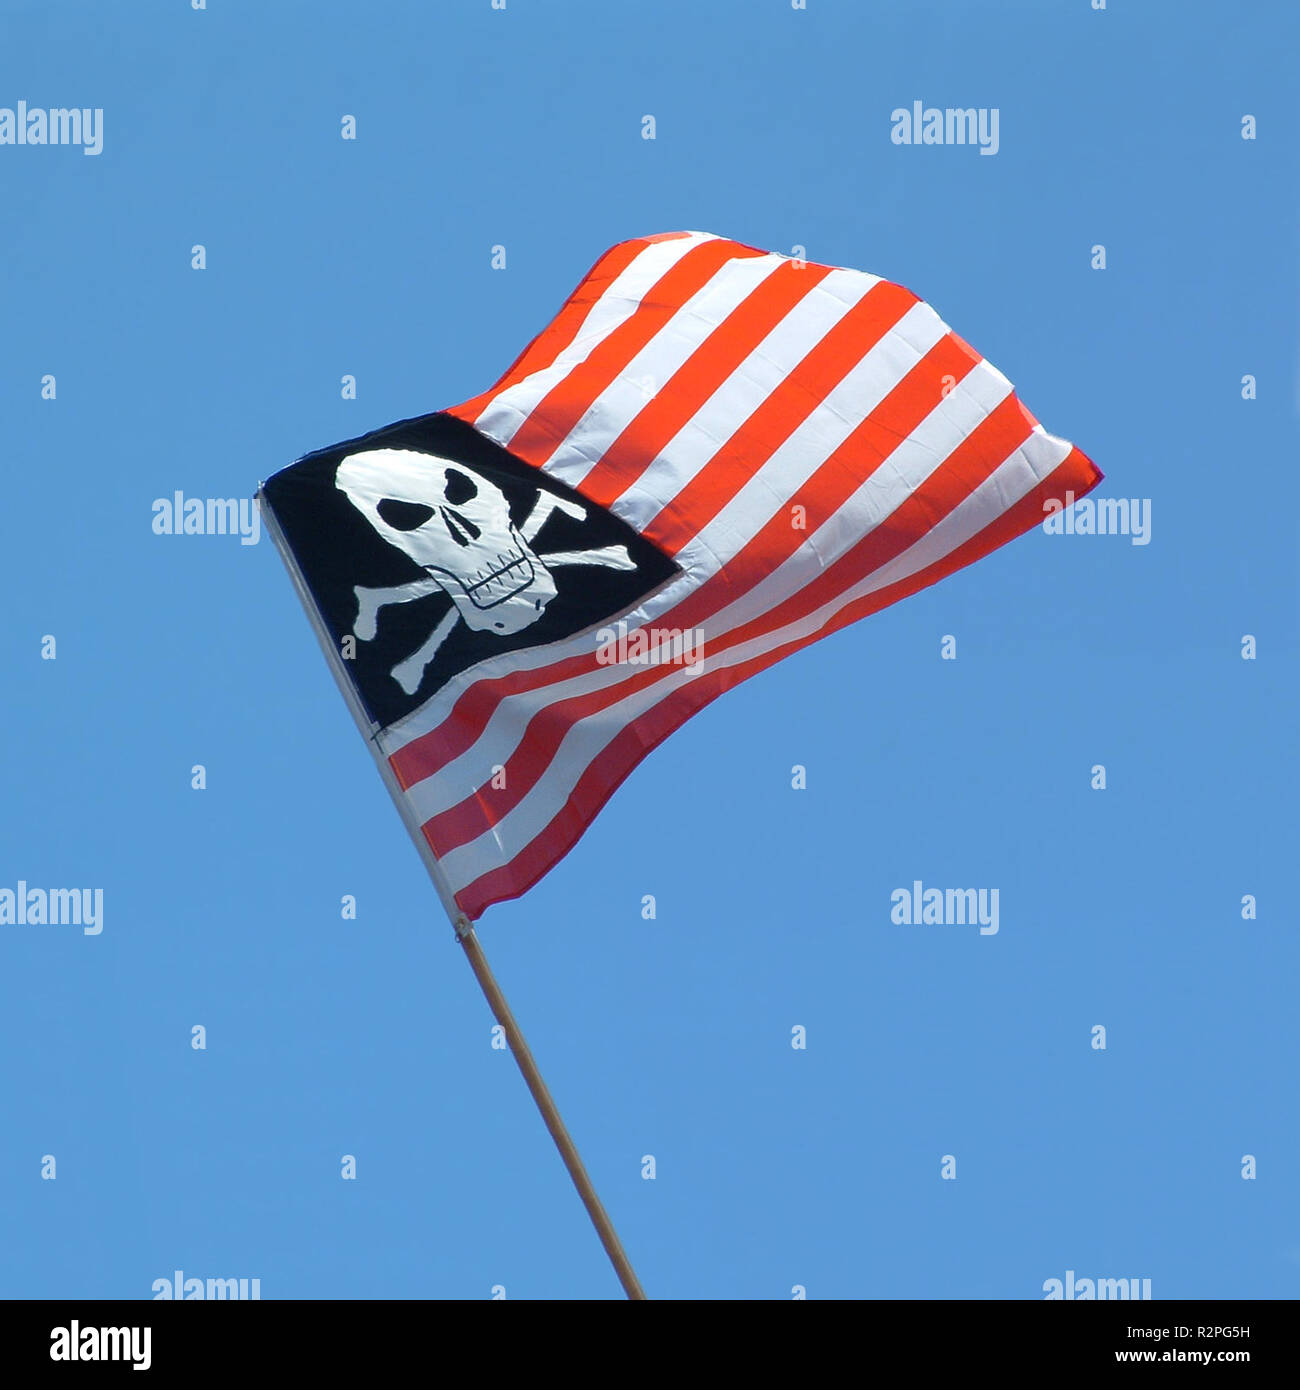 Bandera pirata combinado con bandera estadounidense Foto de stock